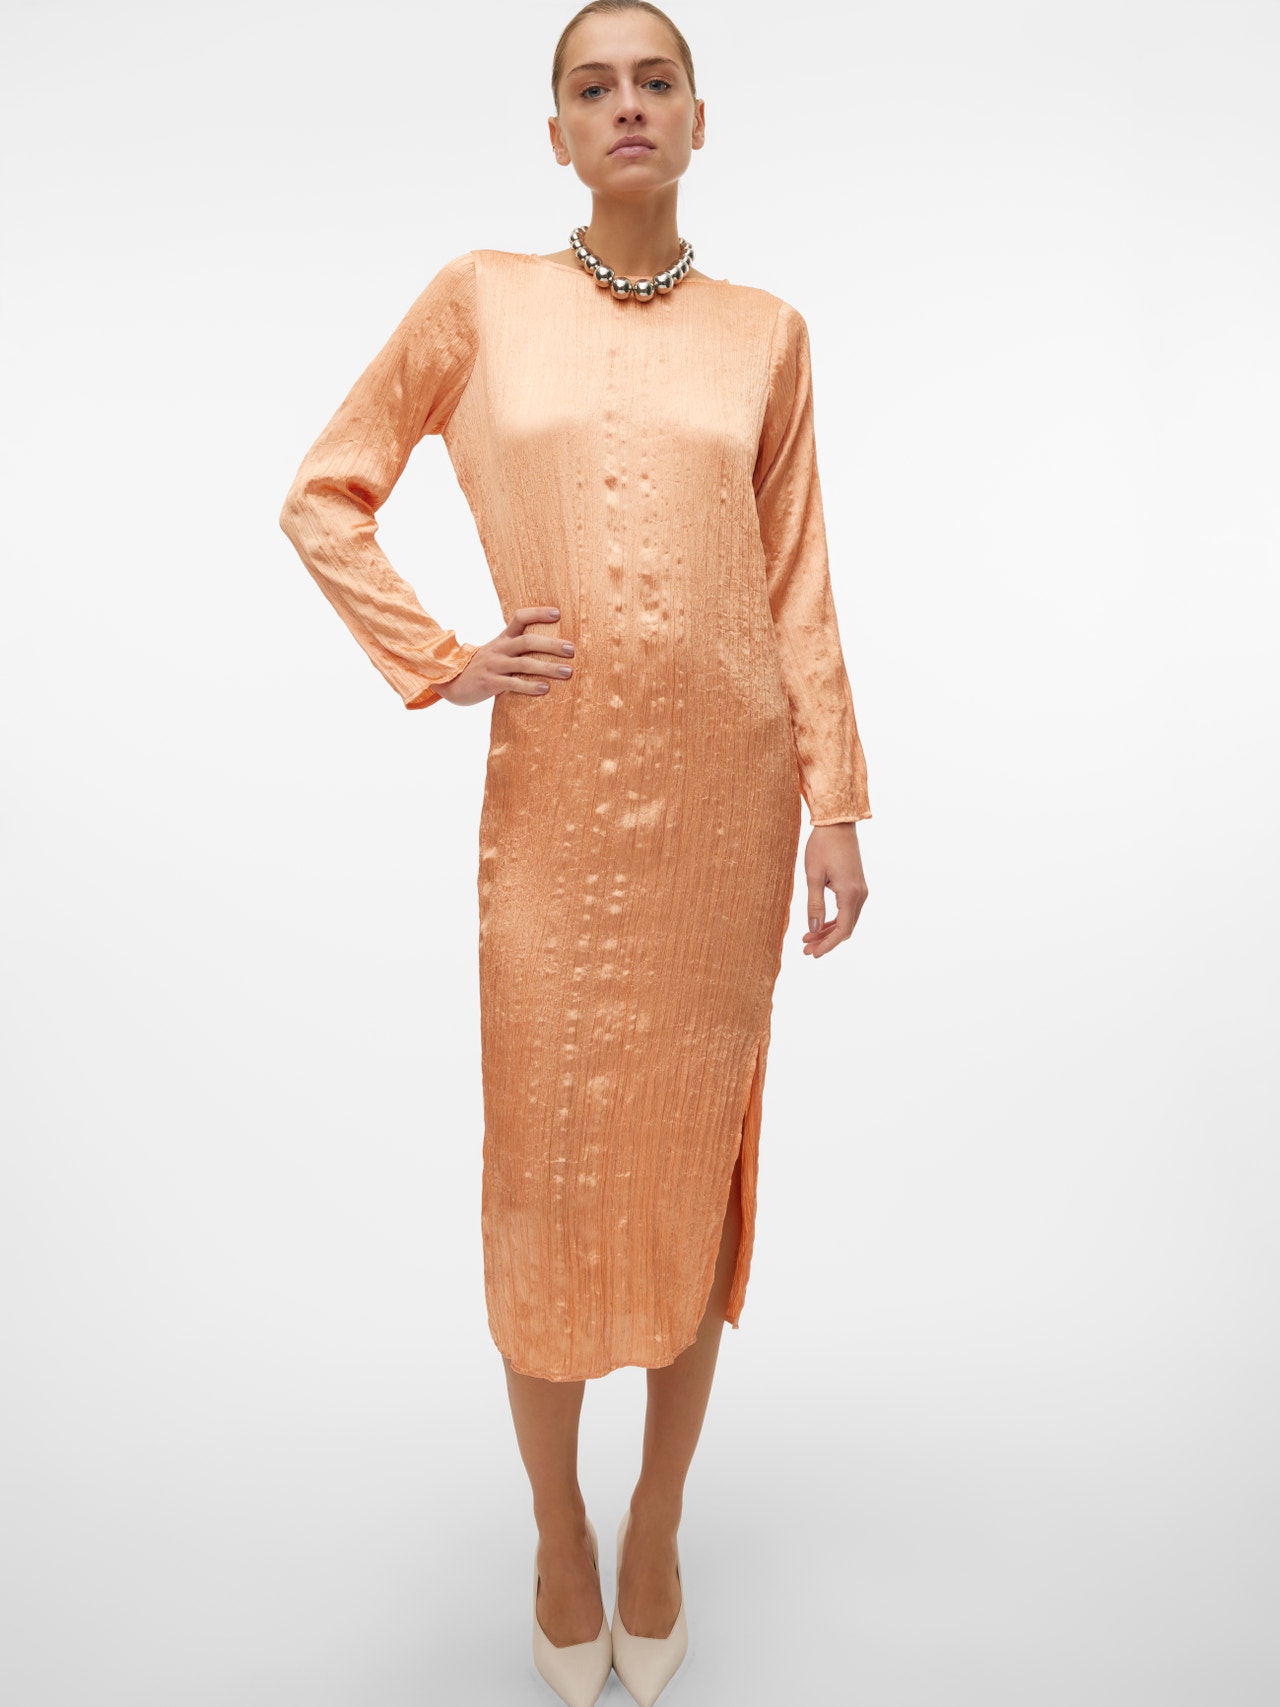 Vero Moda VMJOHAHA Midi dress -Peach Bloom - 10305201